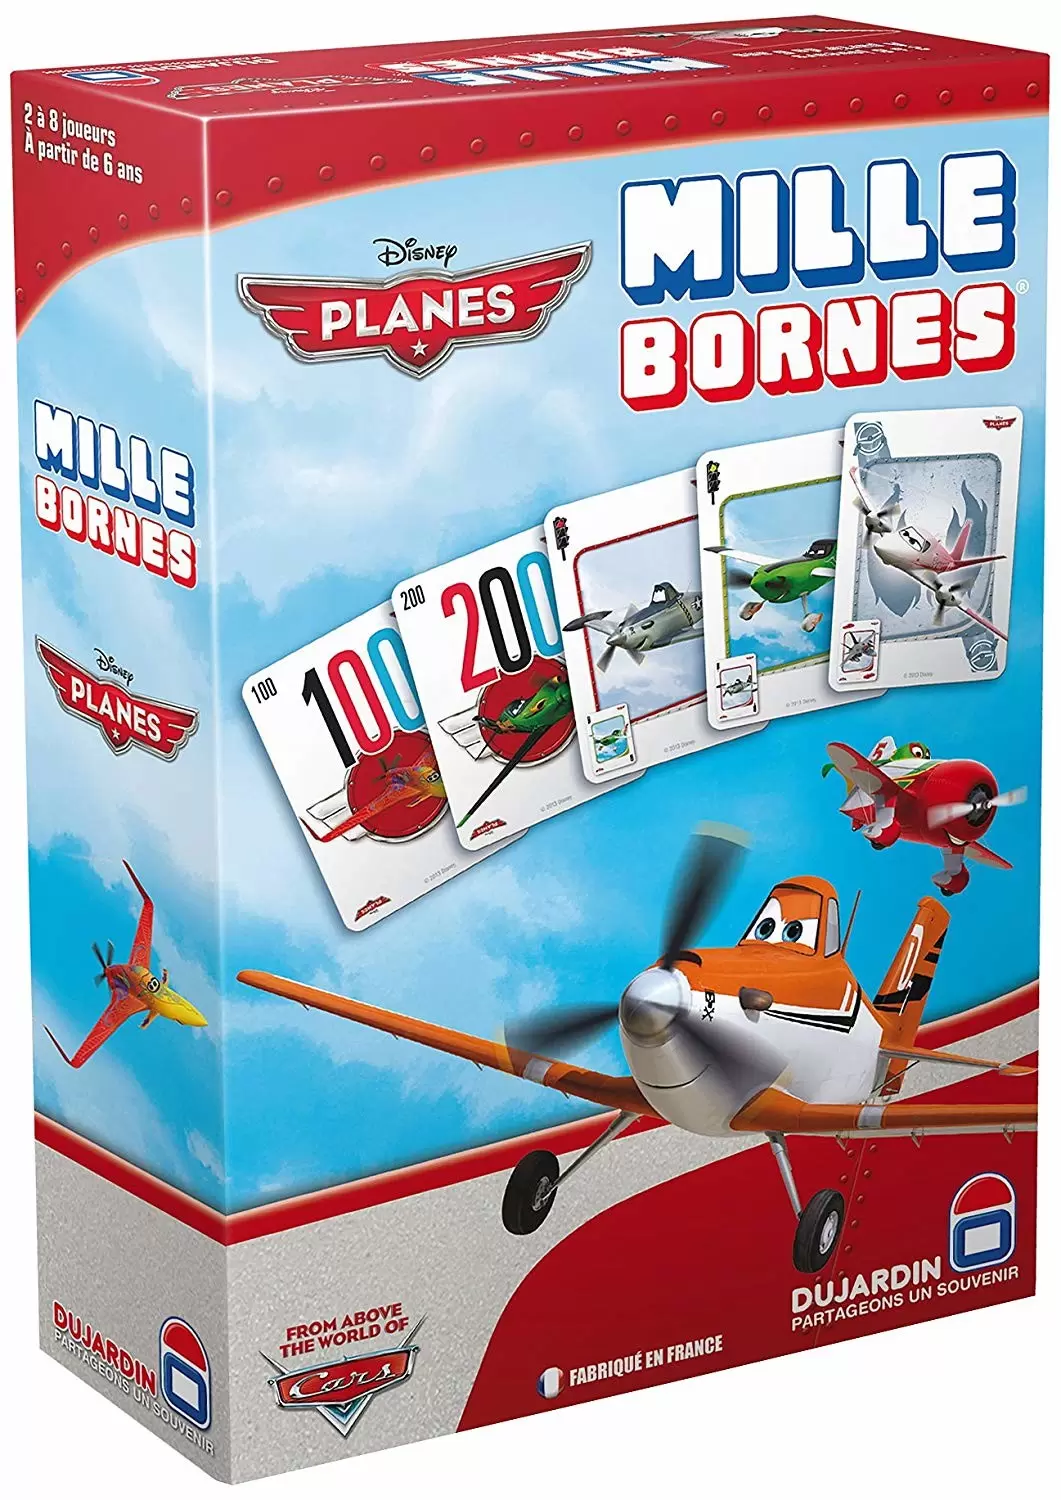 Mille Bornes - Mille bornes - Planes